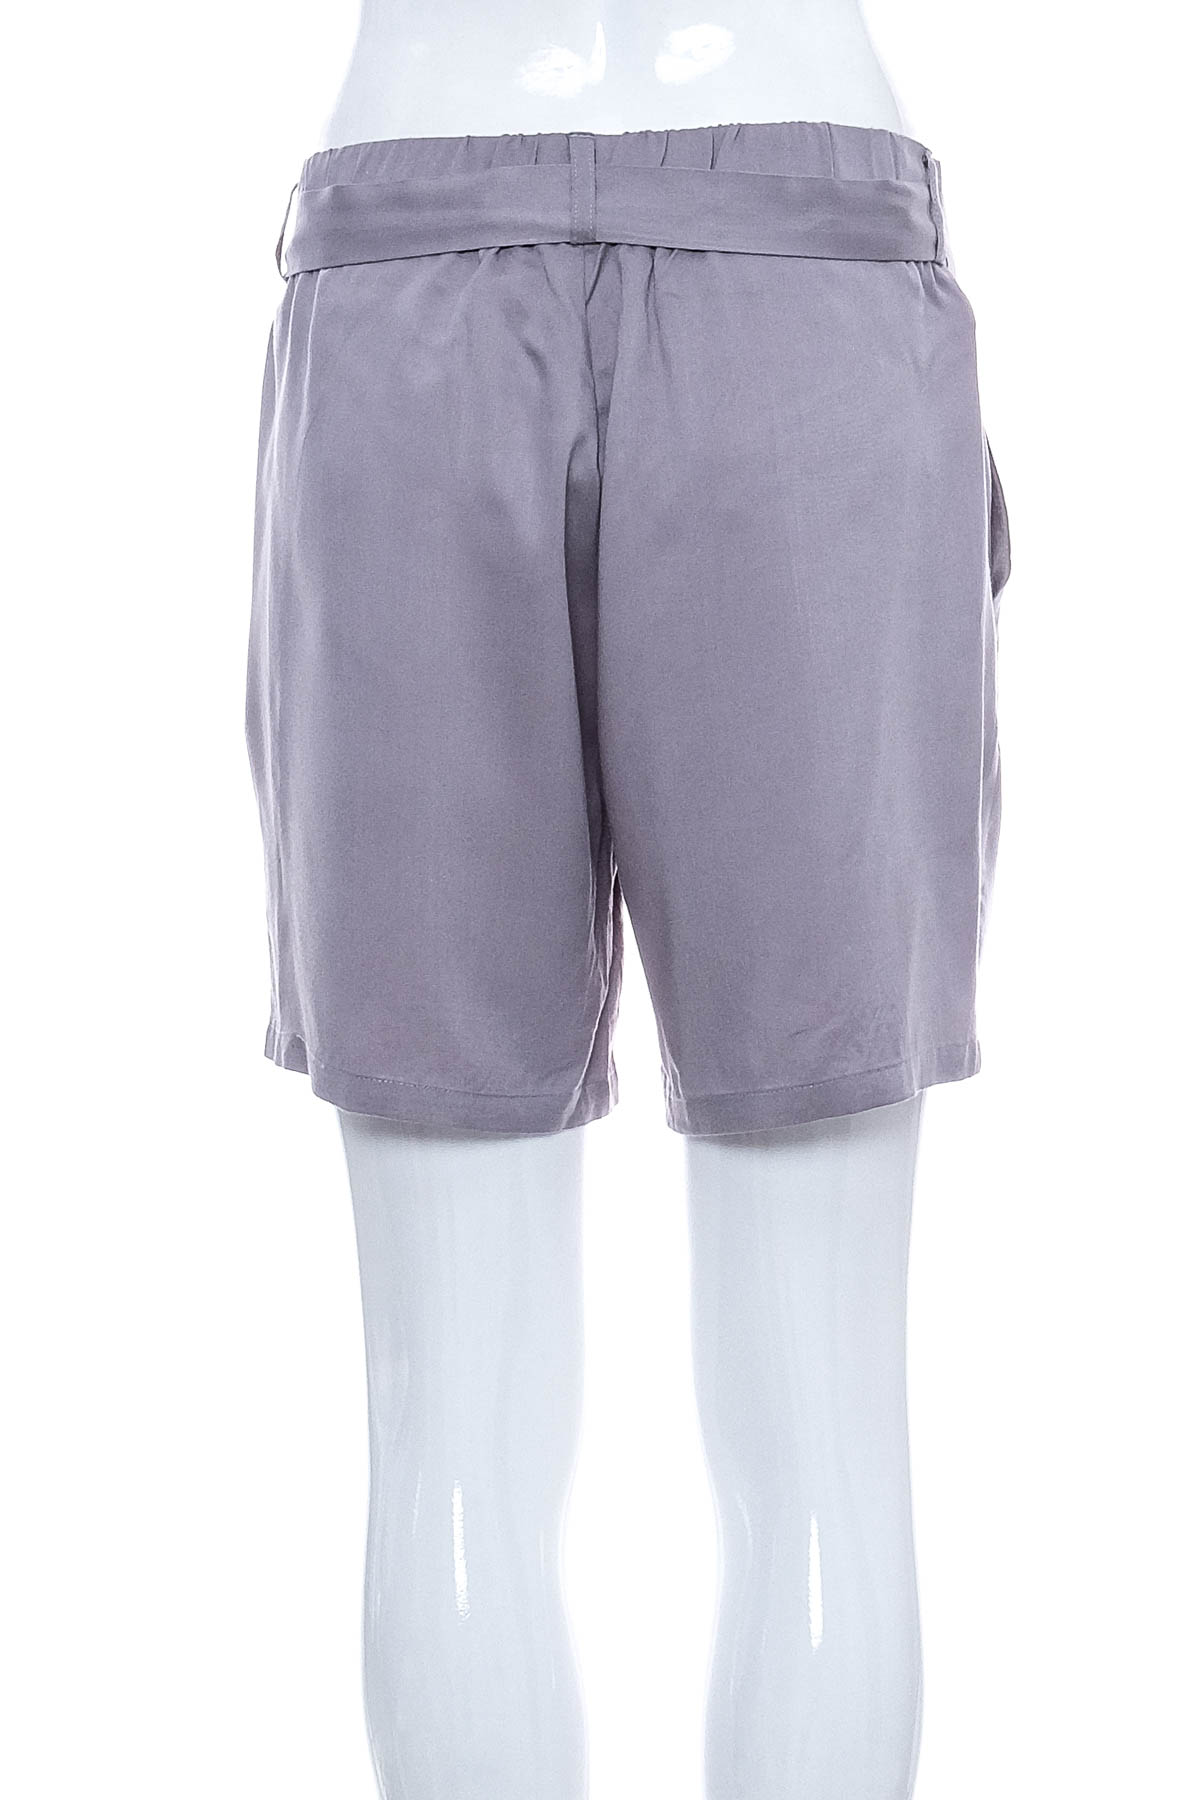 Female shorts - Re.Draft - 1